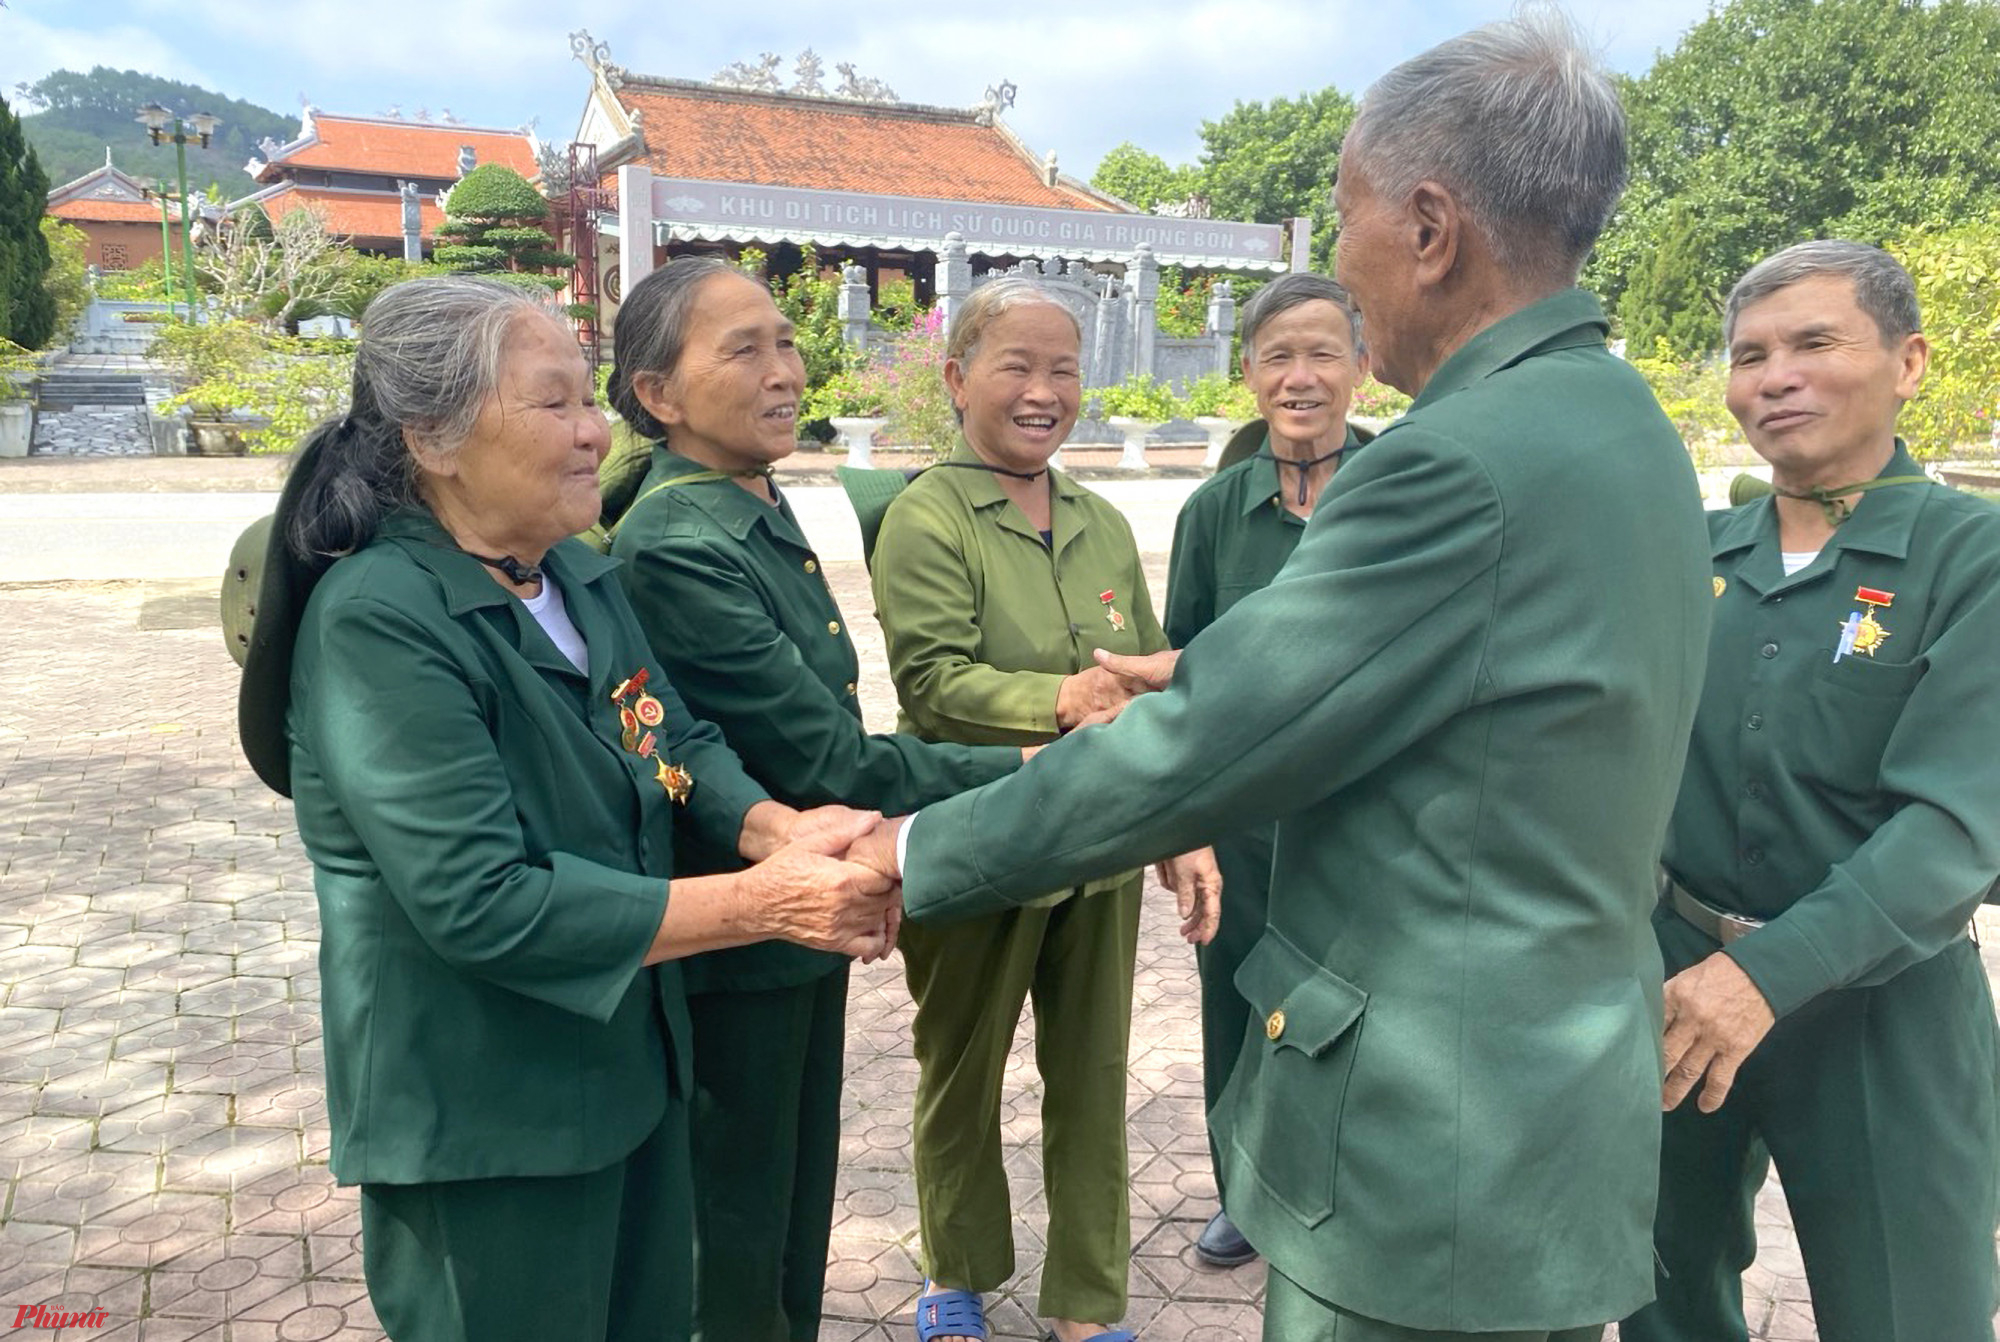 Với những người cựu chiến binh, TNXP... về với Truông Bồn ngày chiến thắng là về thăm lại “chiến trường xưa”, nơi in dấu những ký ức không thể nào quên của một thời tuổi trẻ. Đây cũng là dịp để những người cựu binh gặp lại đồng đội xưa.